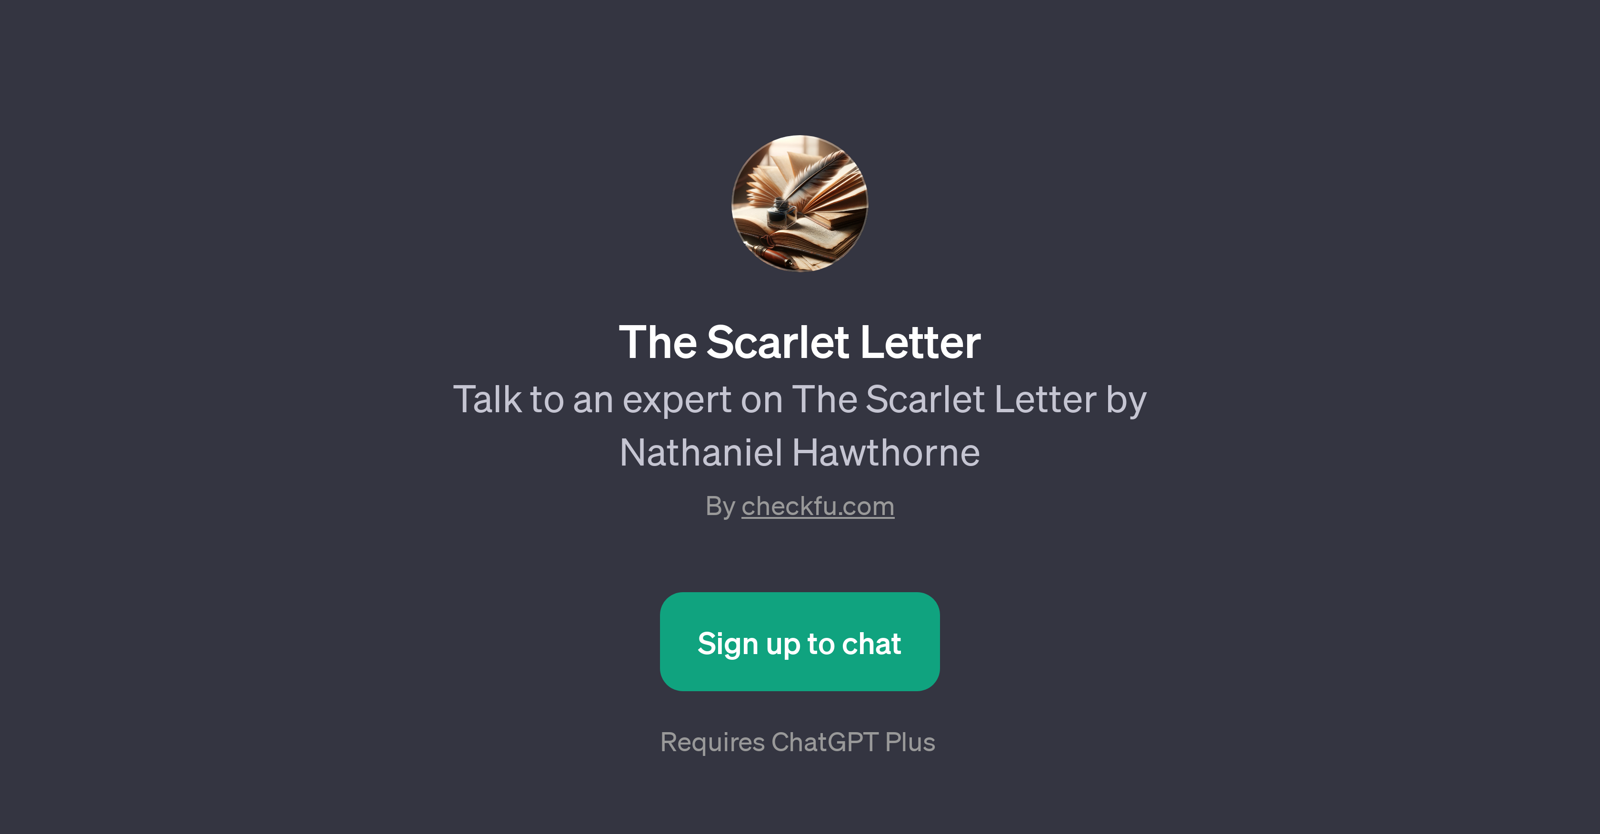 The Scarlet Letter website